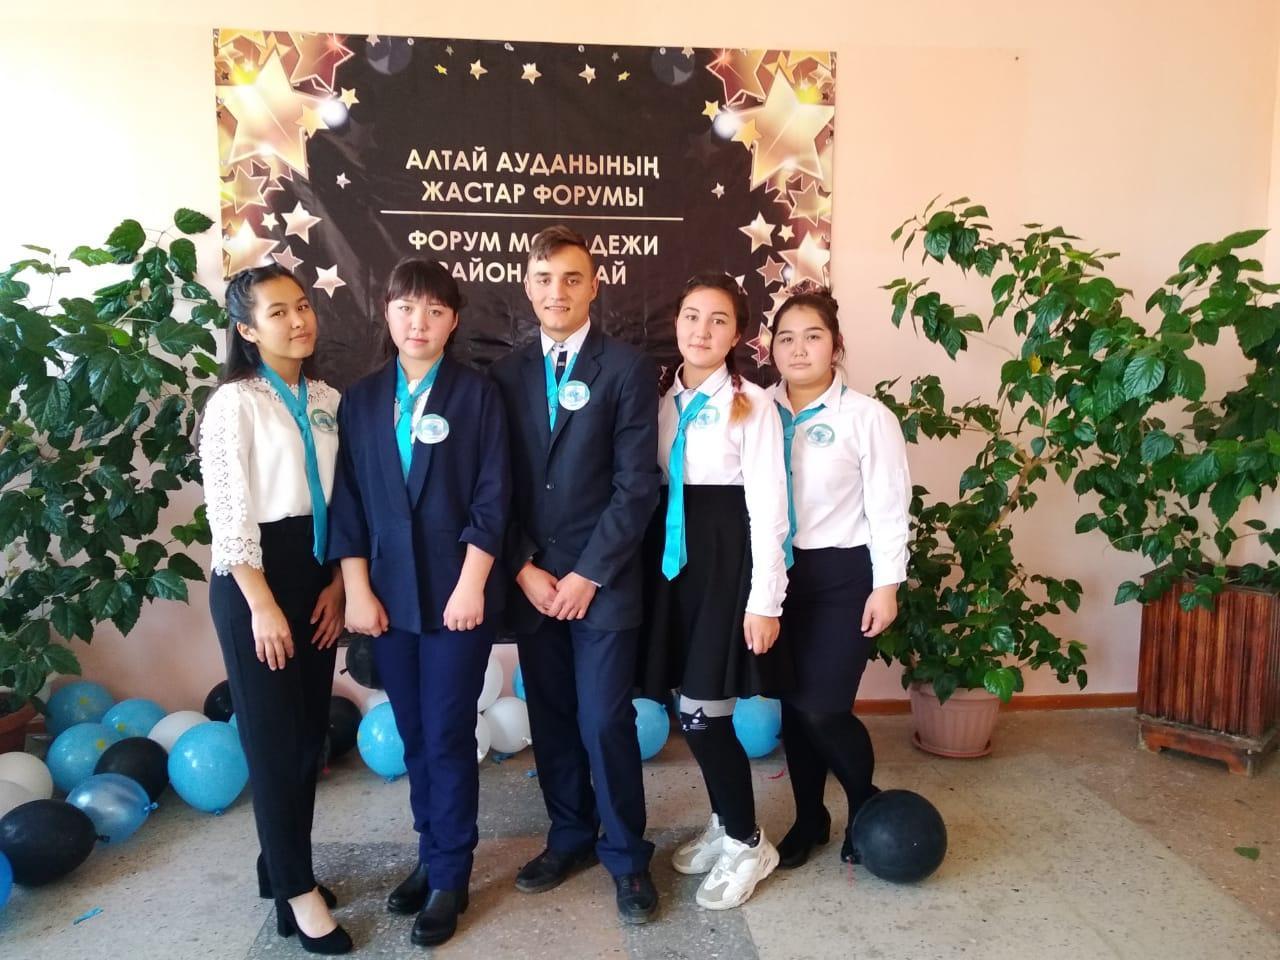 X форум молодежи района Алтай « Управляй будущим»